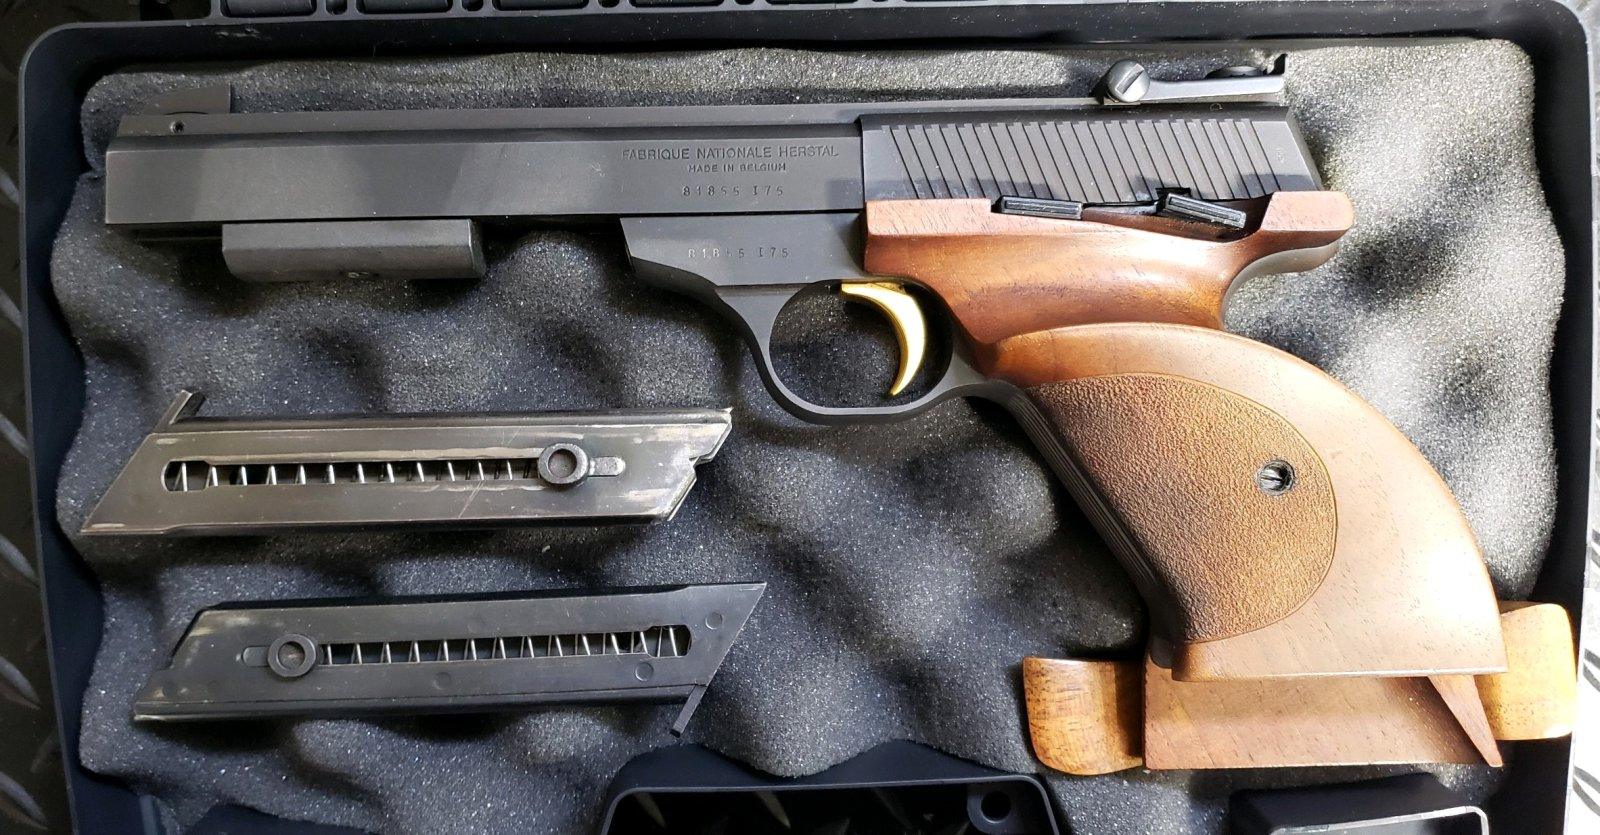 FN Herstal .22 LR pistol 1 of 2.jpg